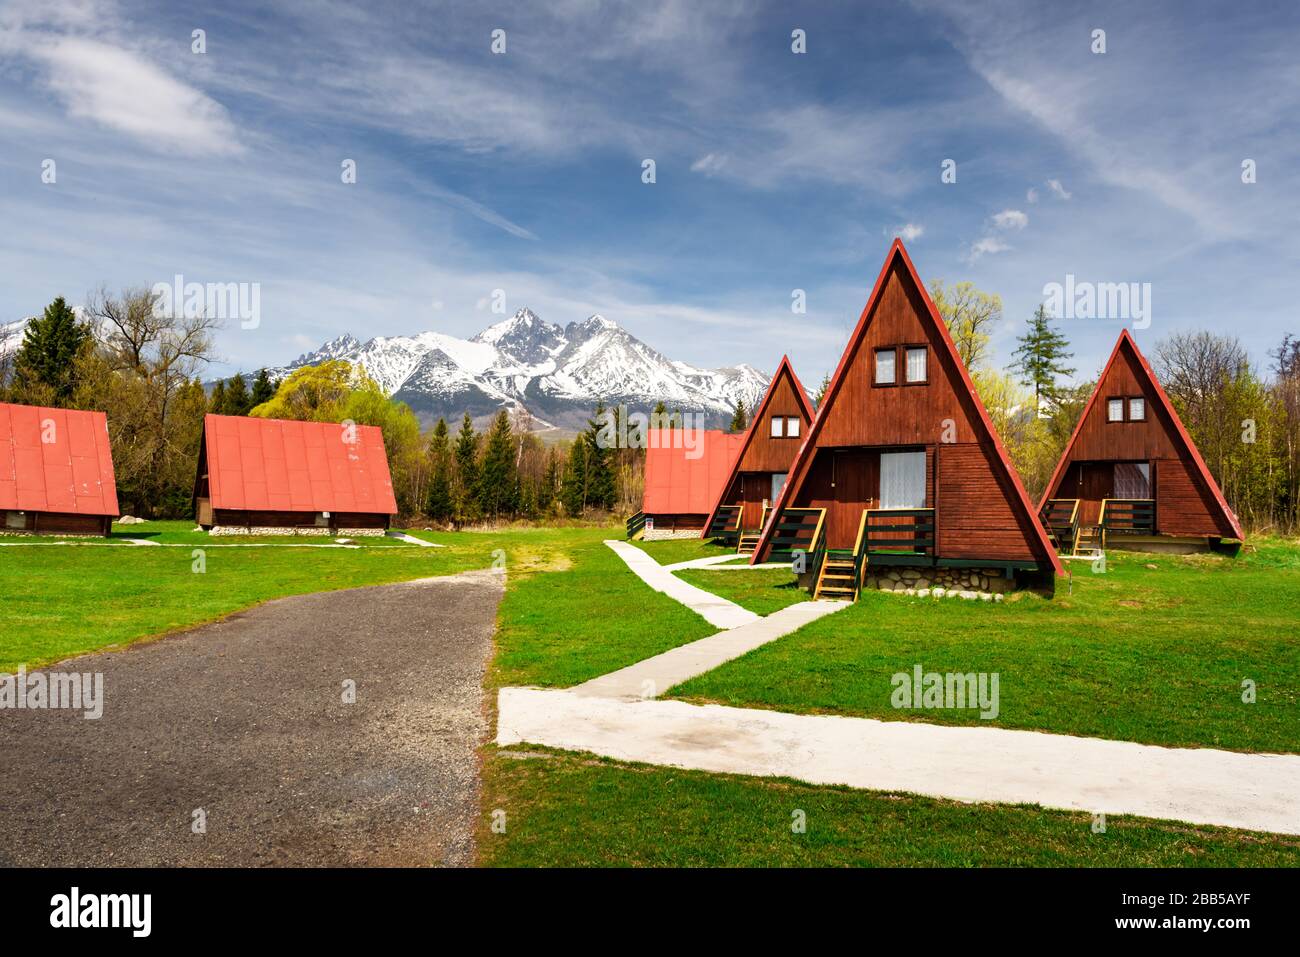 Camping con casas de madera roja en las montañas Tatra, Parque Nacional de los Altos Tatras, Eslovaquia. Fotografía de paisajes Foto de stock